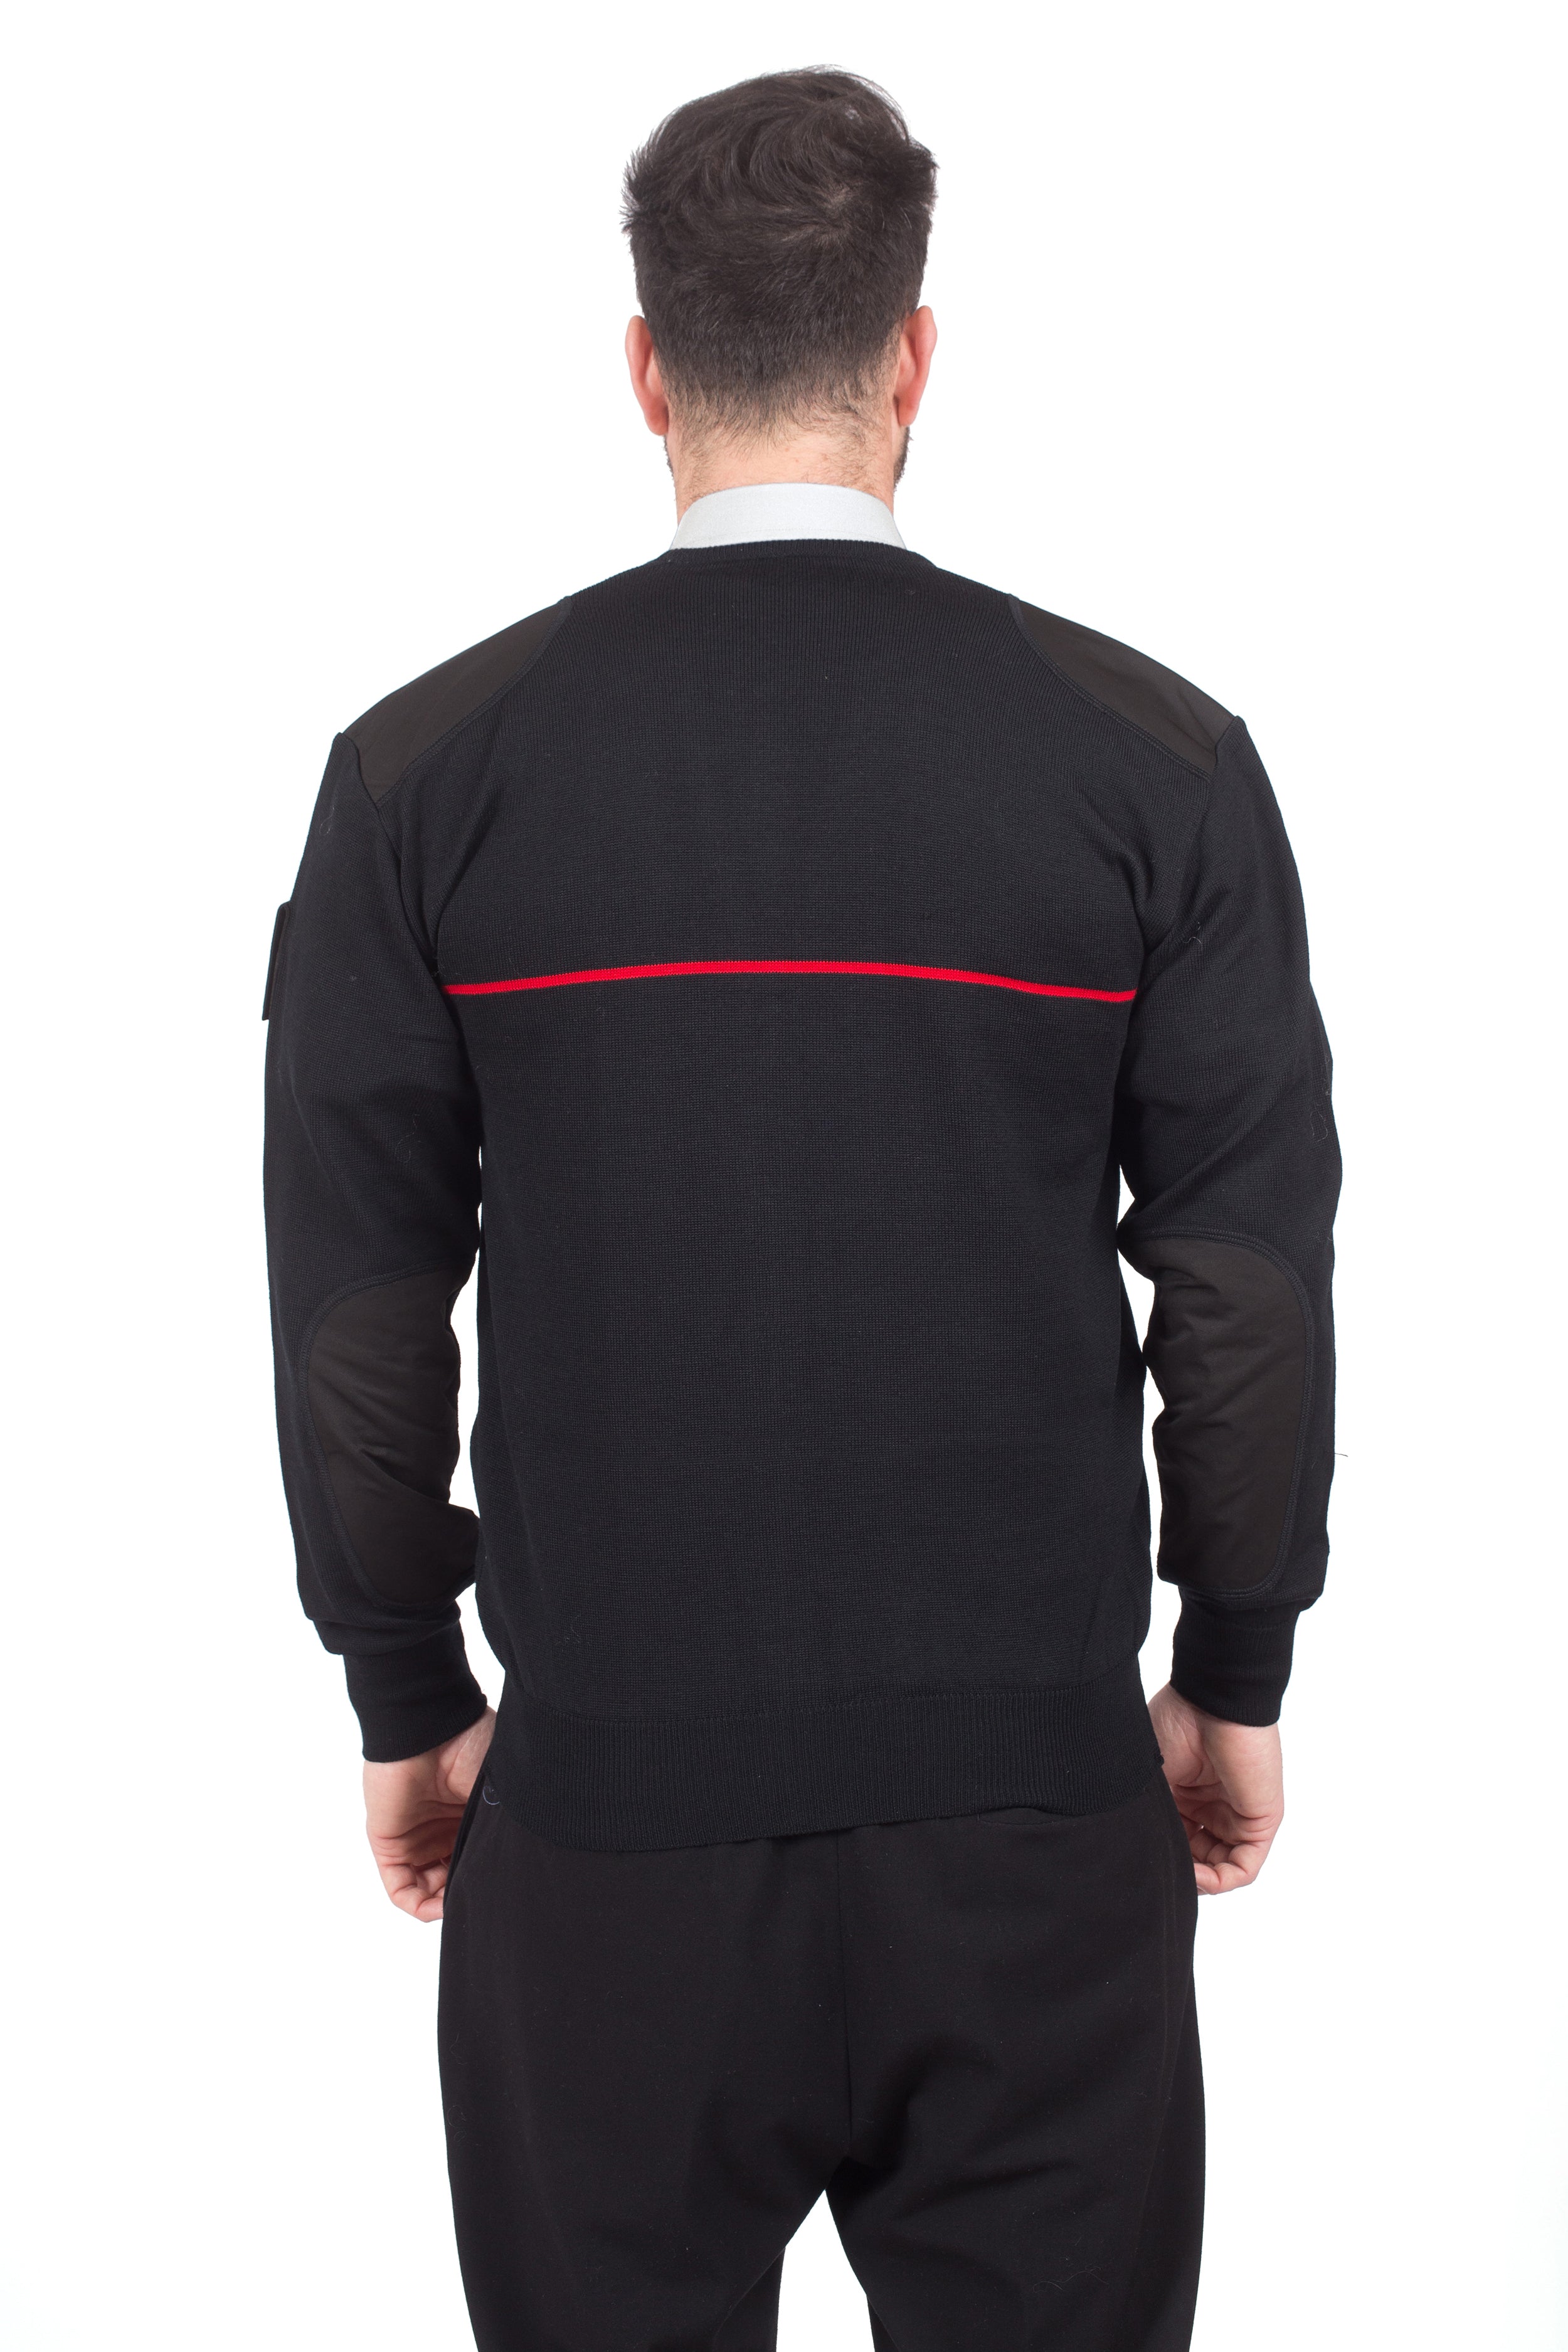 Carabinieri Zip Sweater - Forcetek